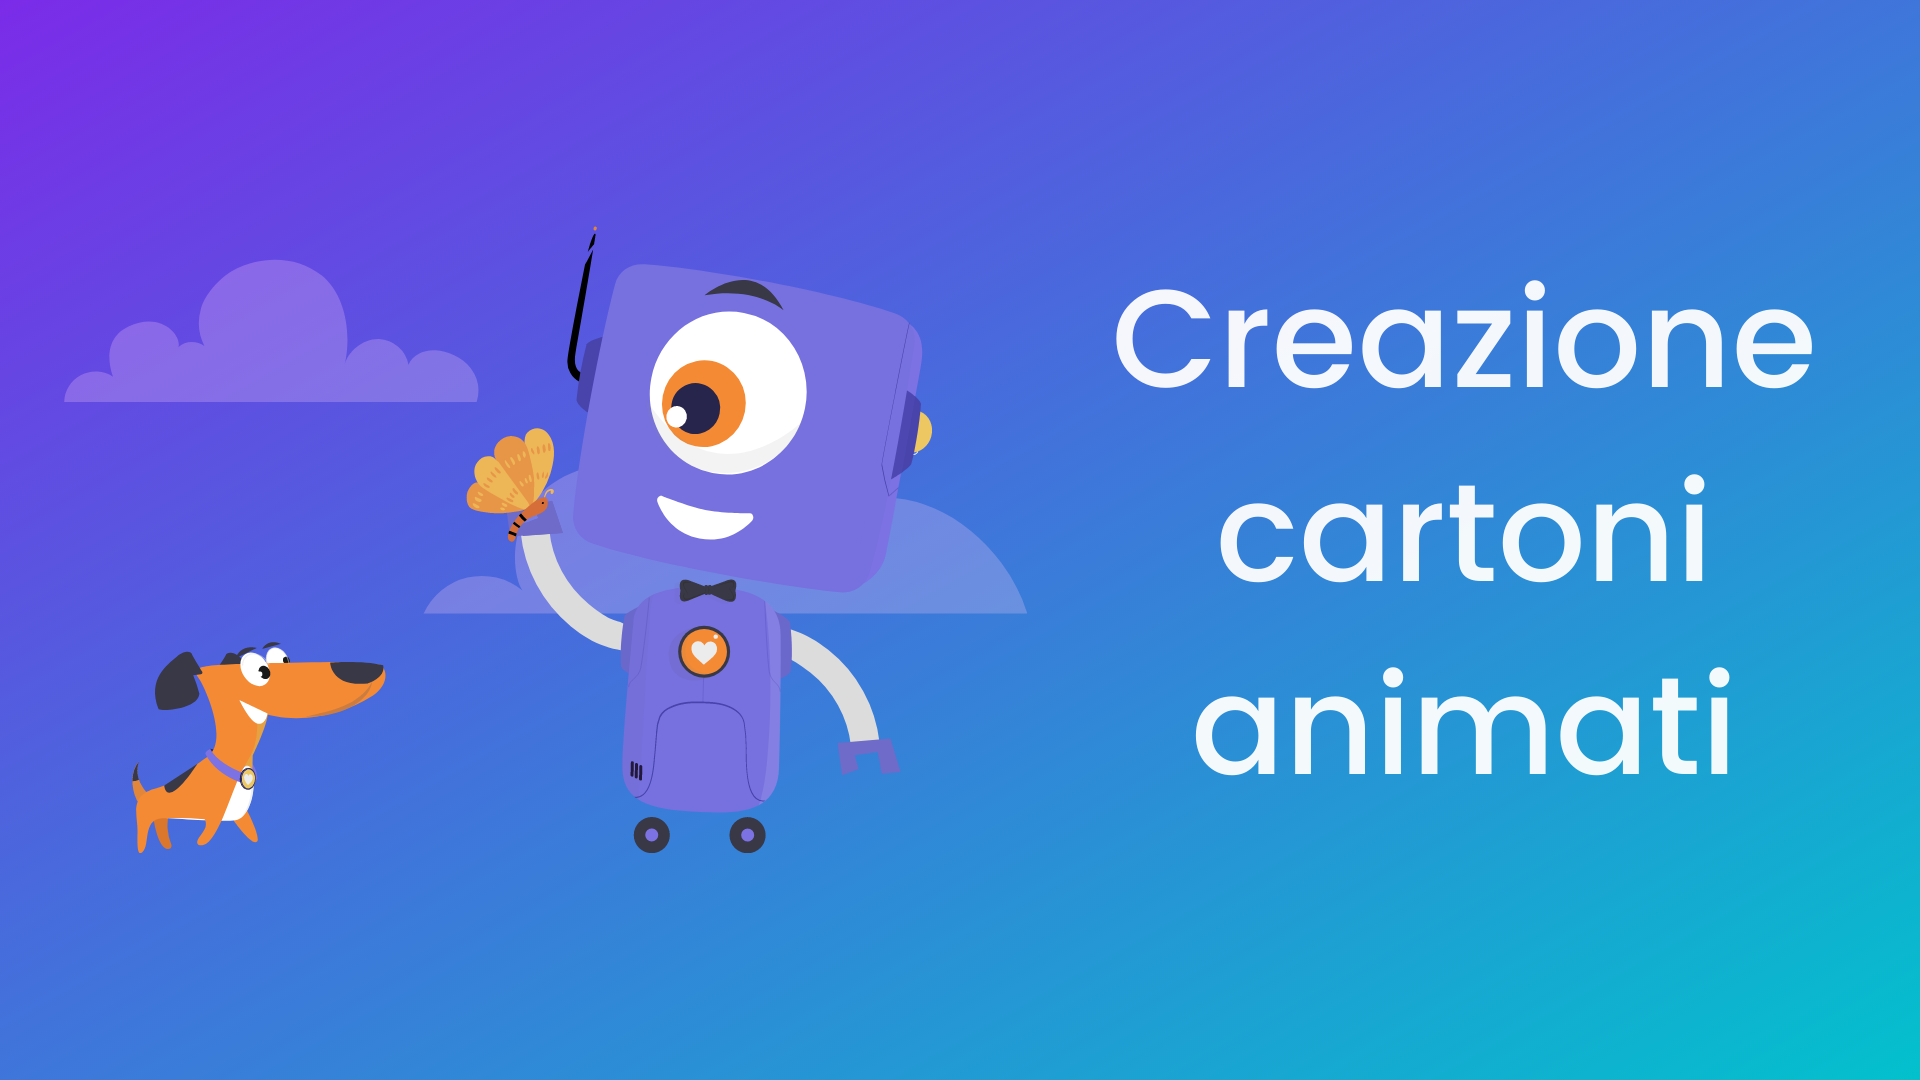 Creazione Online Gratuita Di Cartoni Animati Con Oltre 3000 Animazioni